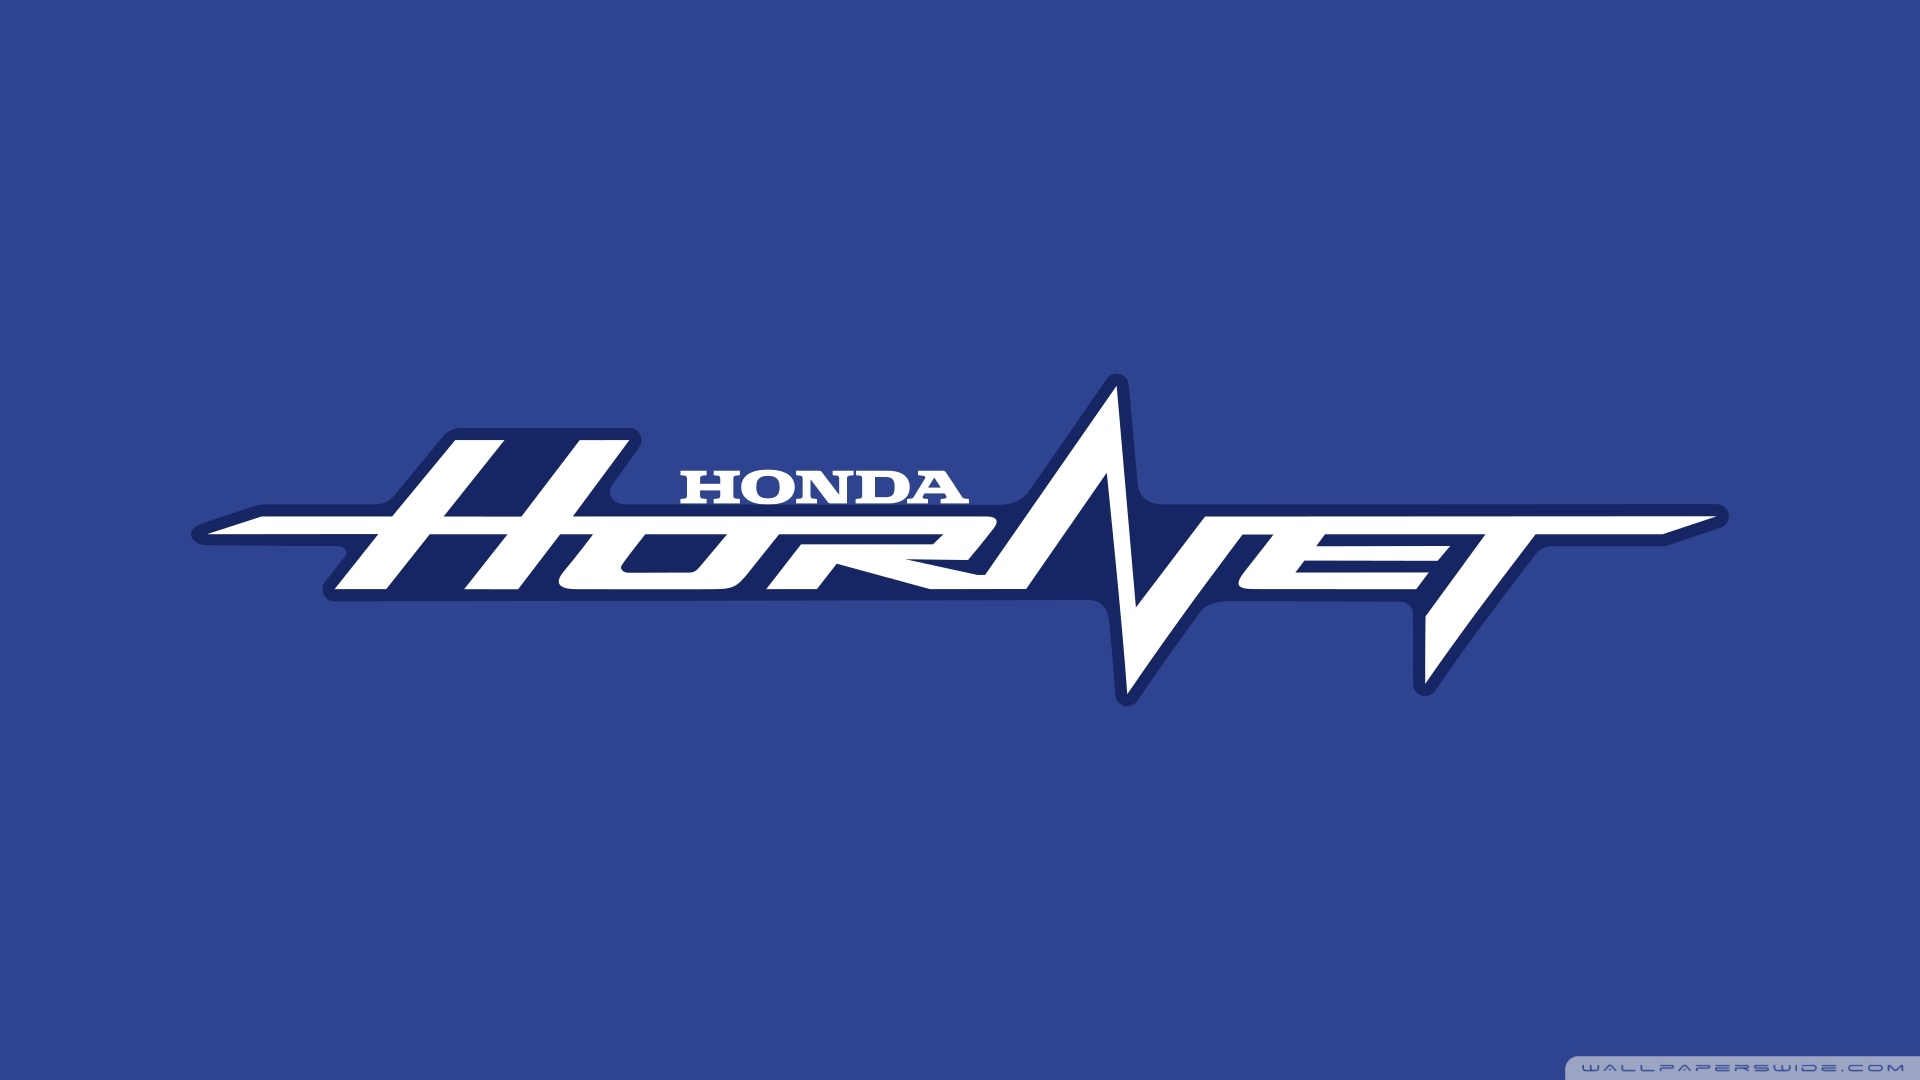 Honda Hornet Ultra HD Desktop Background Wallpaper for 4K UHD TV